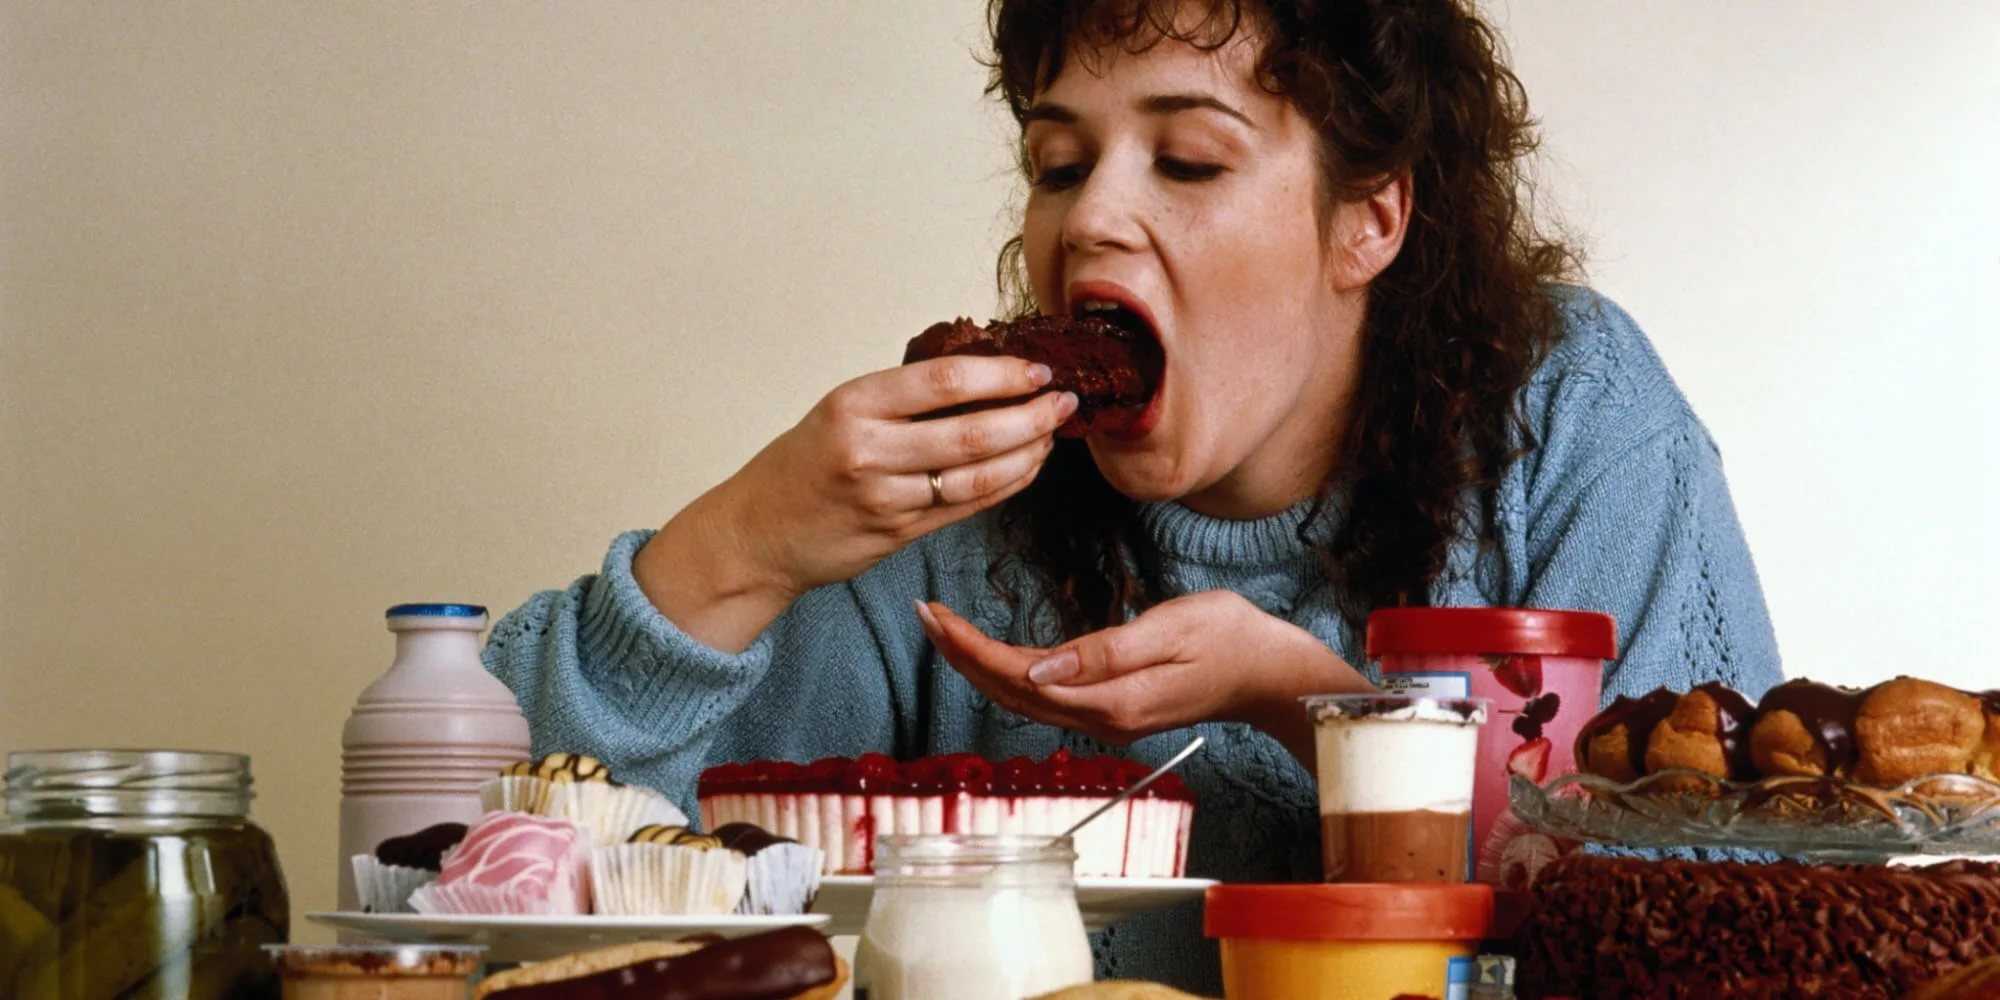 Ешь и толстым становишься. Обжорство. Заедать стресс едой. Переедание вредная привычка. Импульсивное переедание.